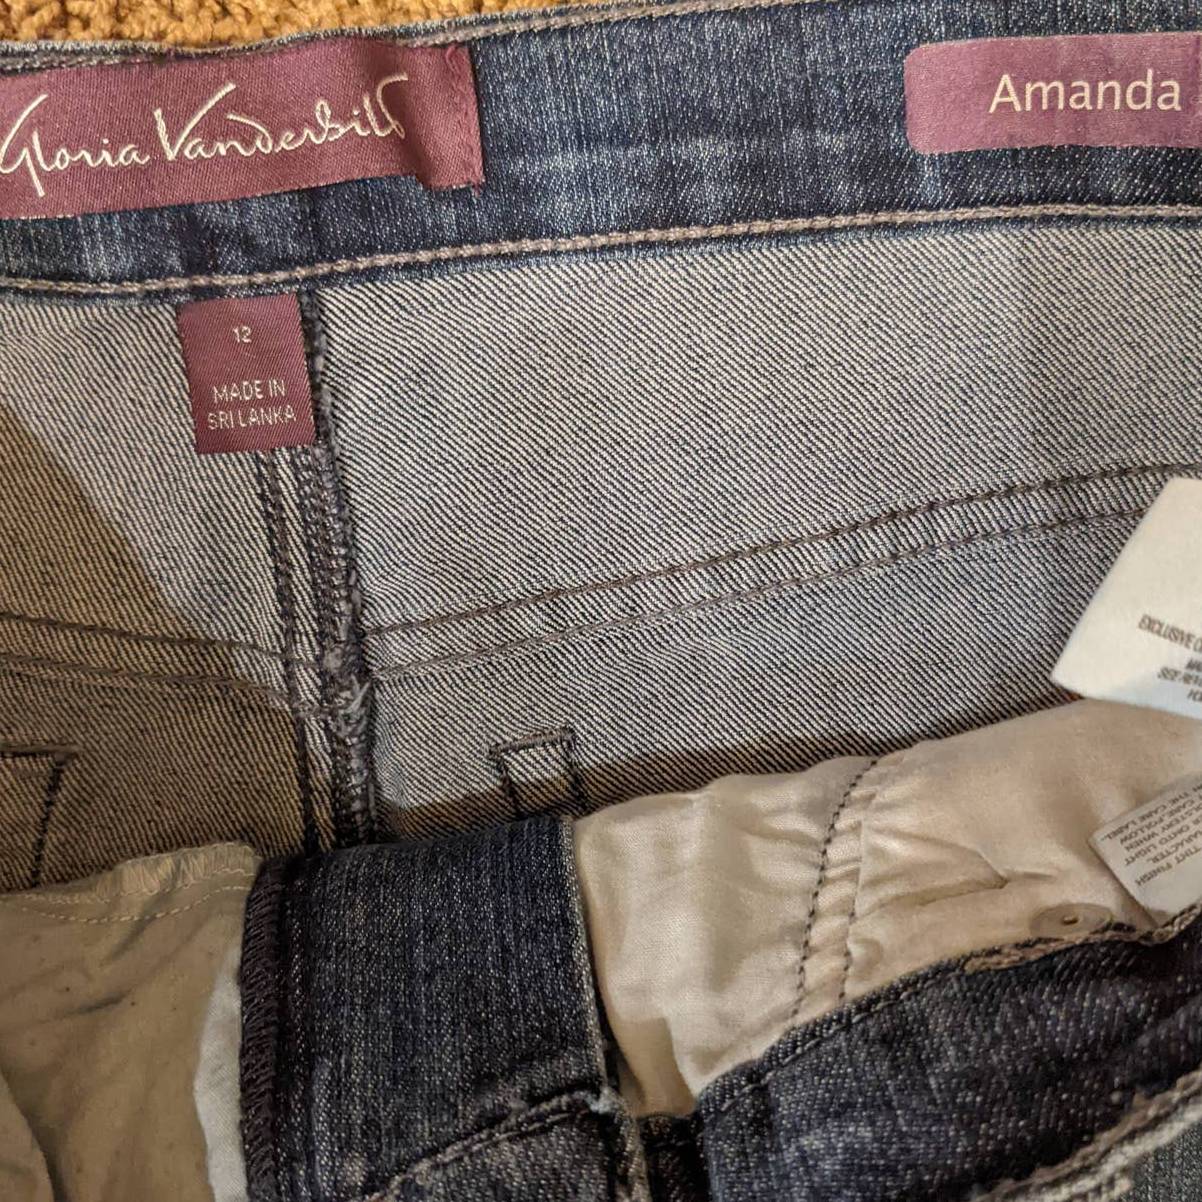 Gloria Vanderbilt - Amanda Jeans - Size 6 - Dark Wash